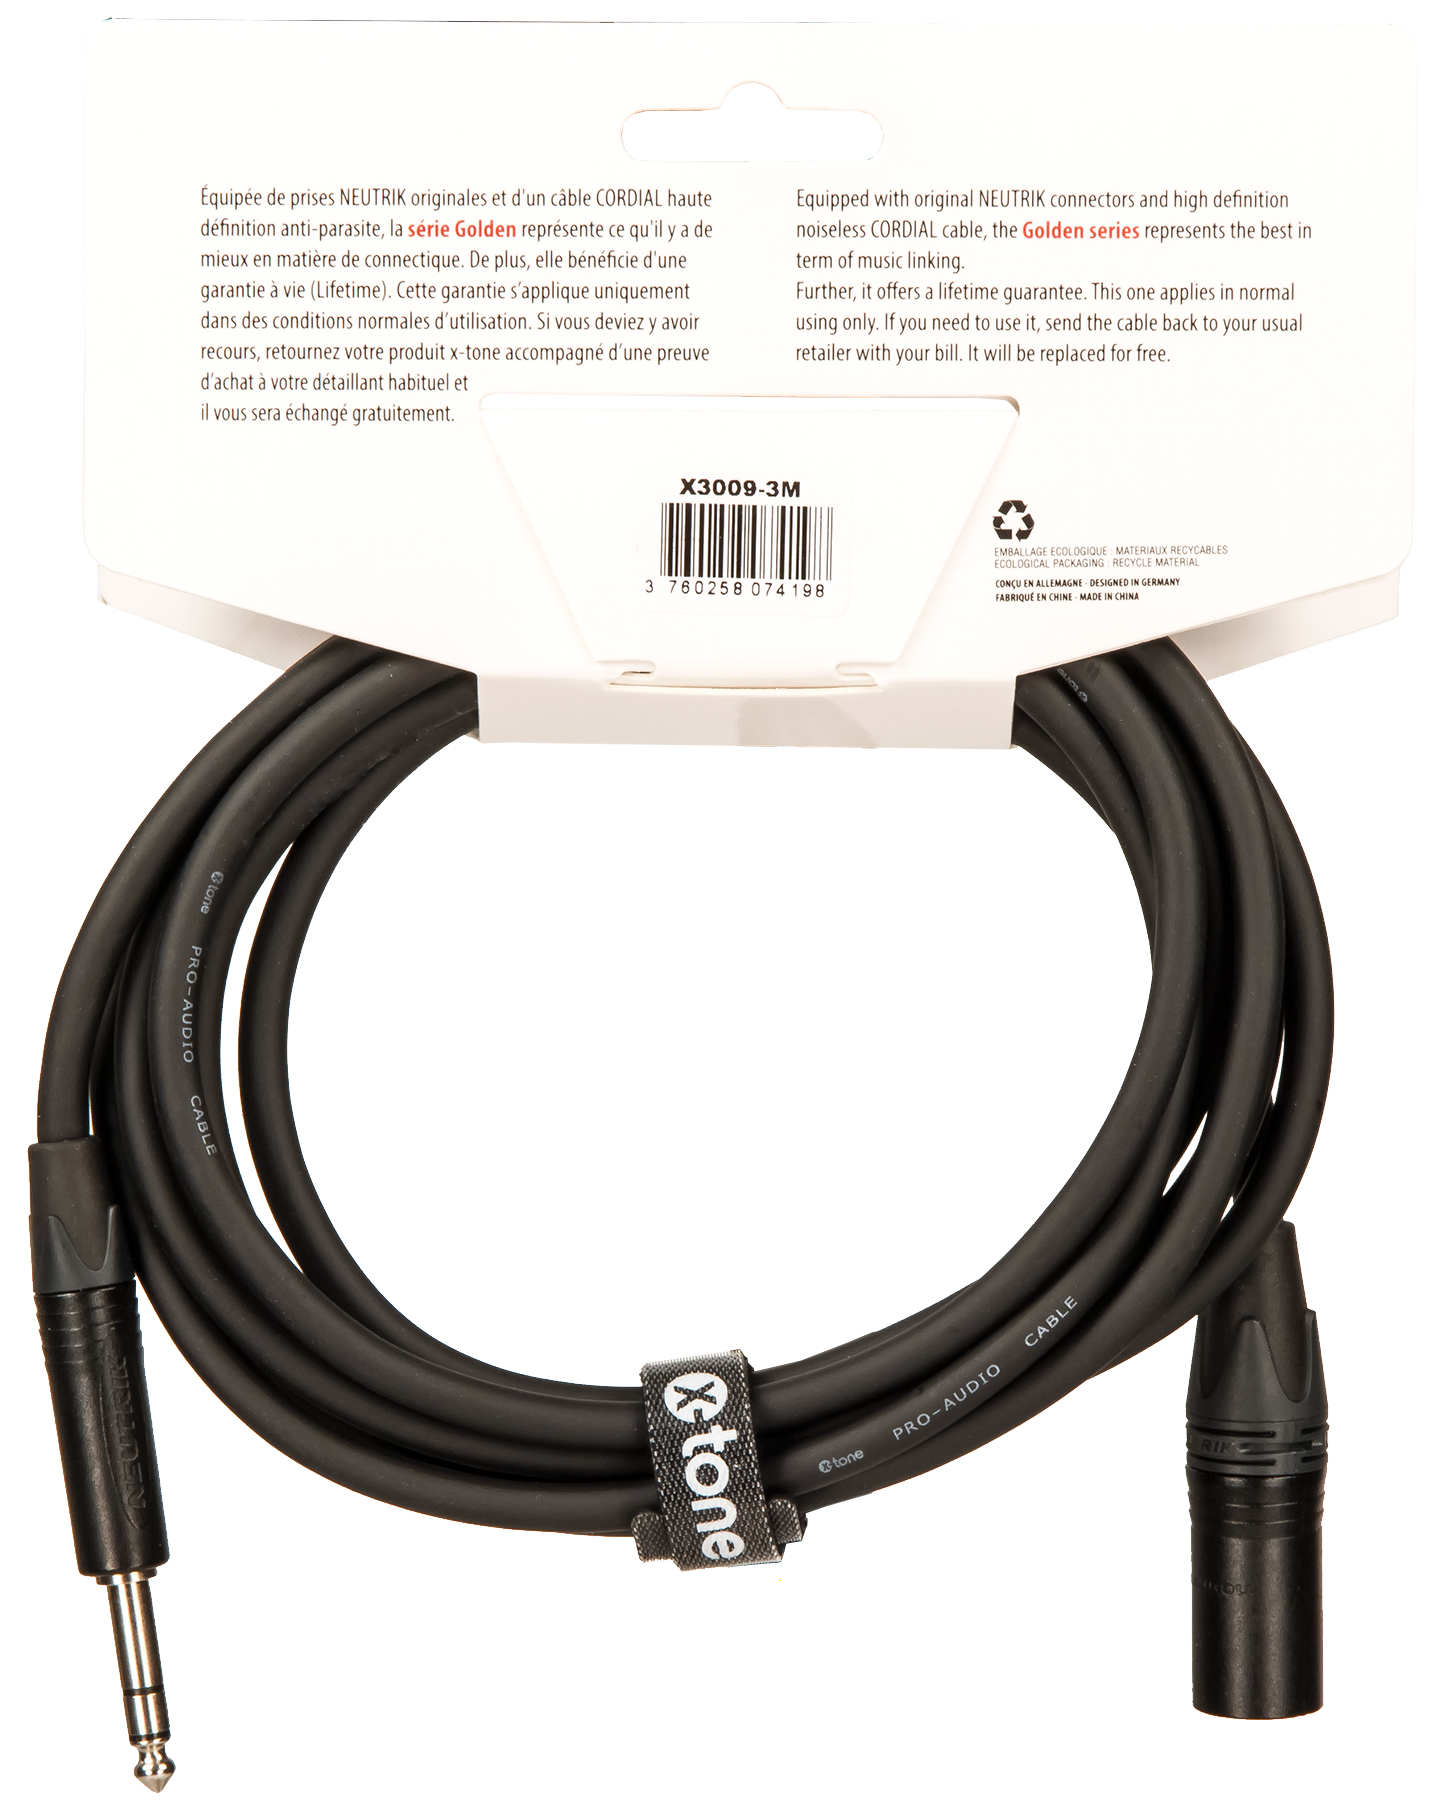 X-tone X3009-3m Cable Golden Series Neutrik Xlr(m) / Jack(m) 6,35 Trs - Cable - Variation 1